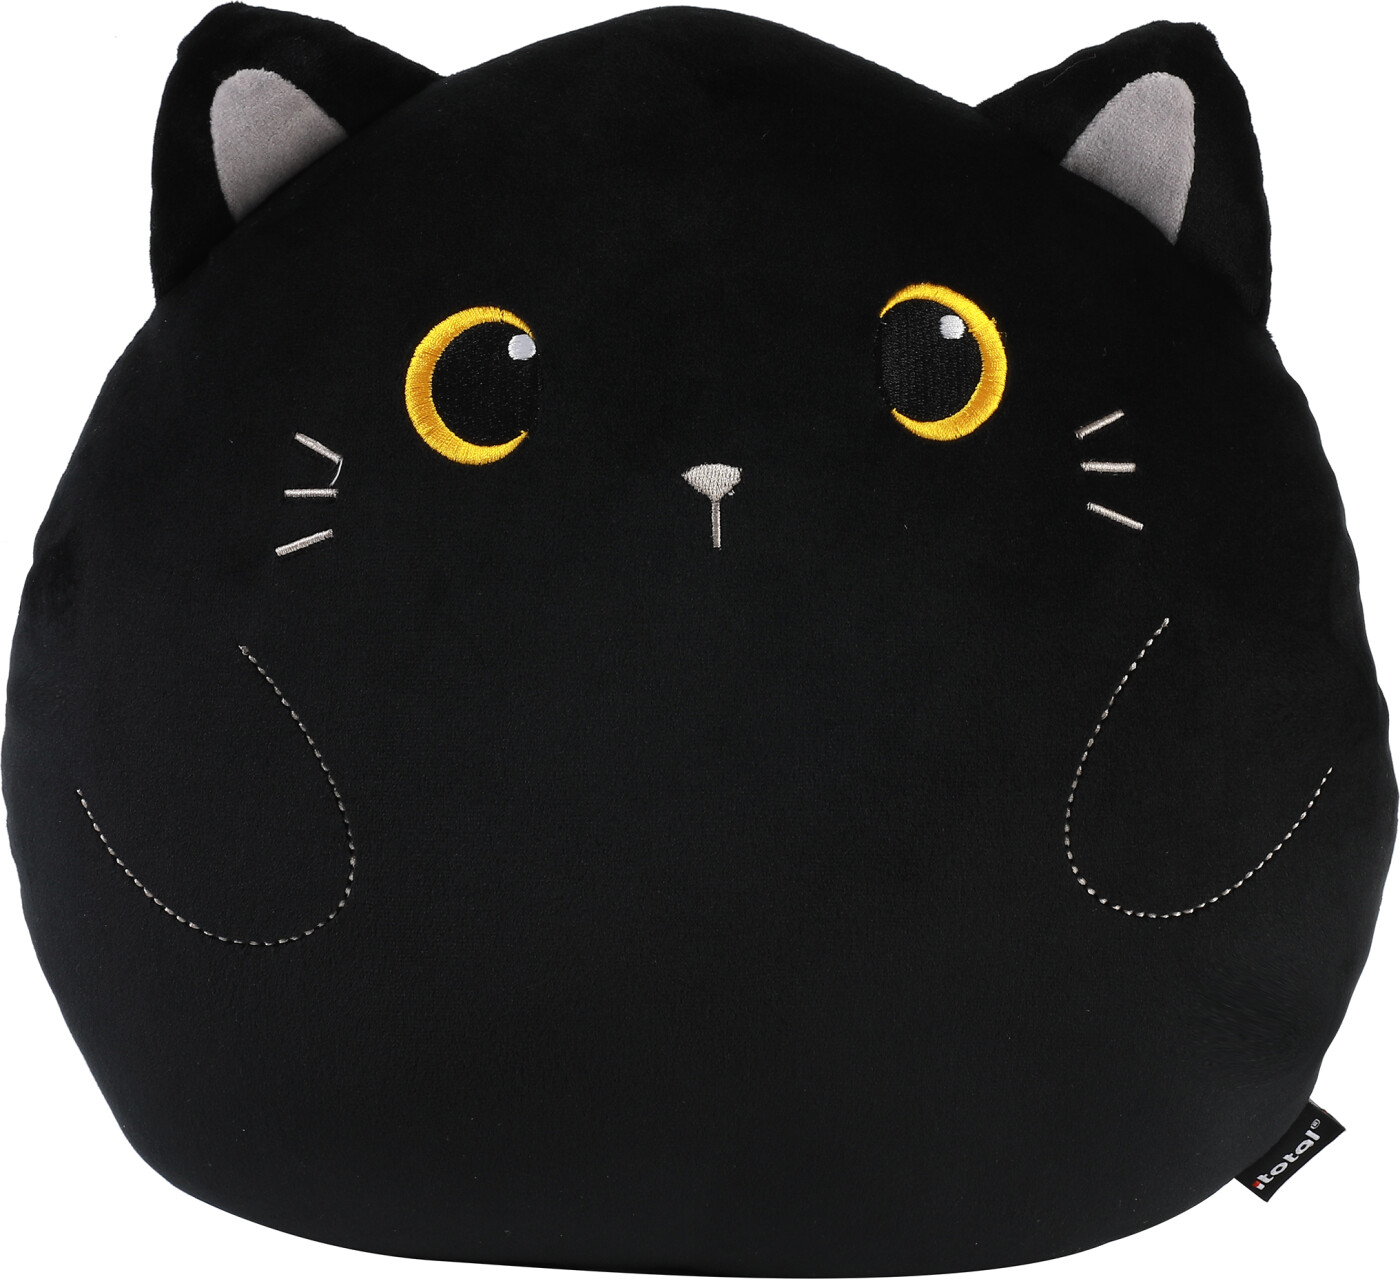 Itotal - Pude - Black Cat